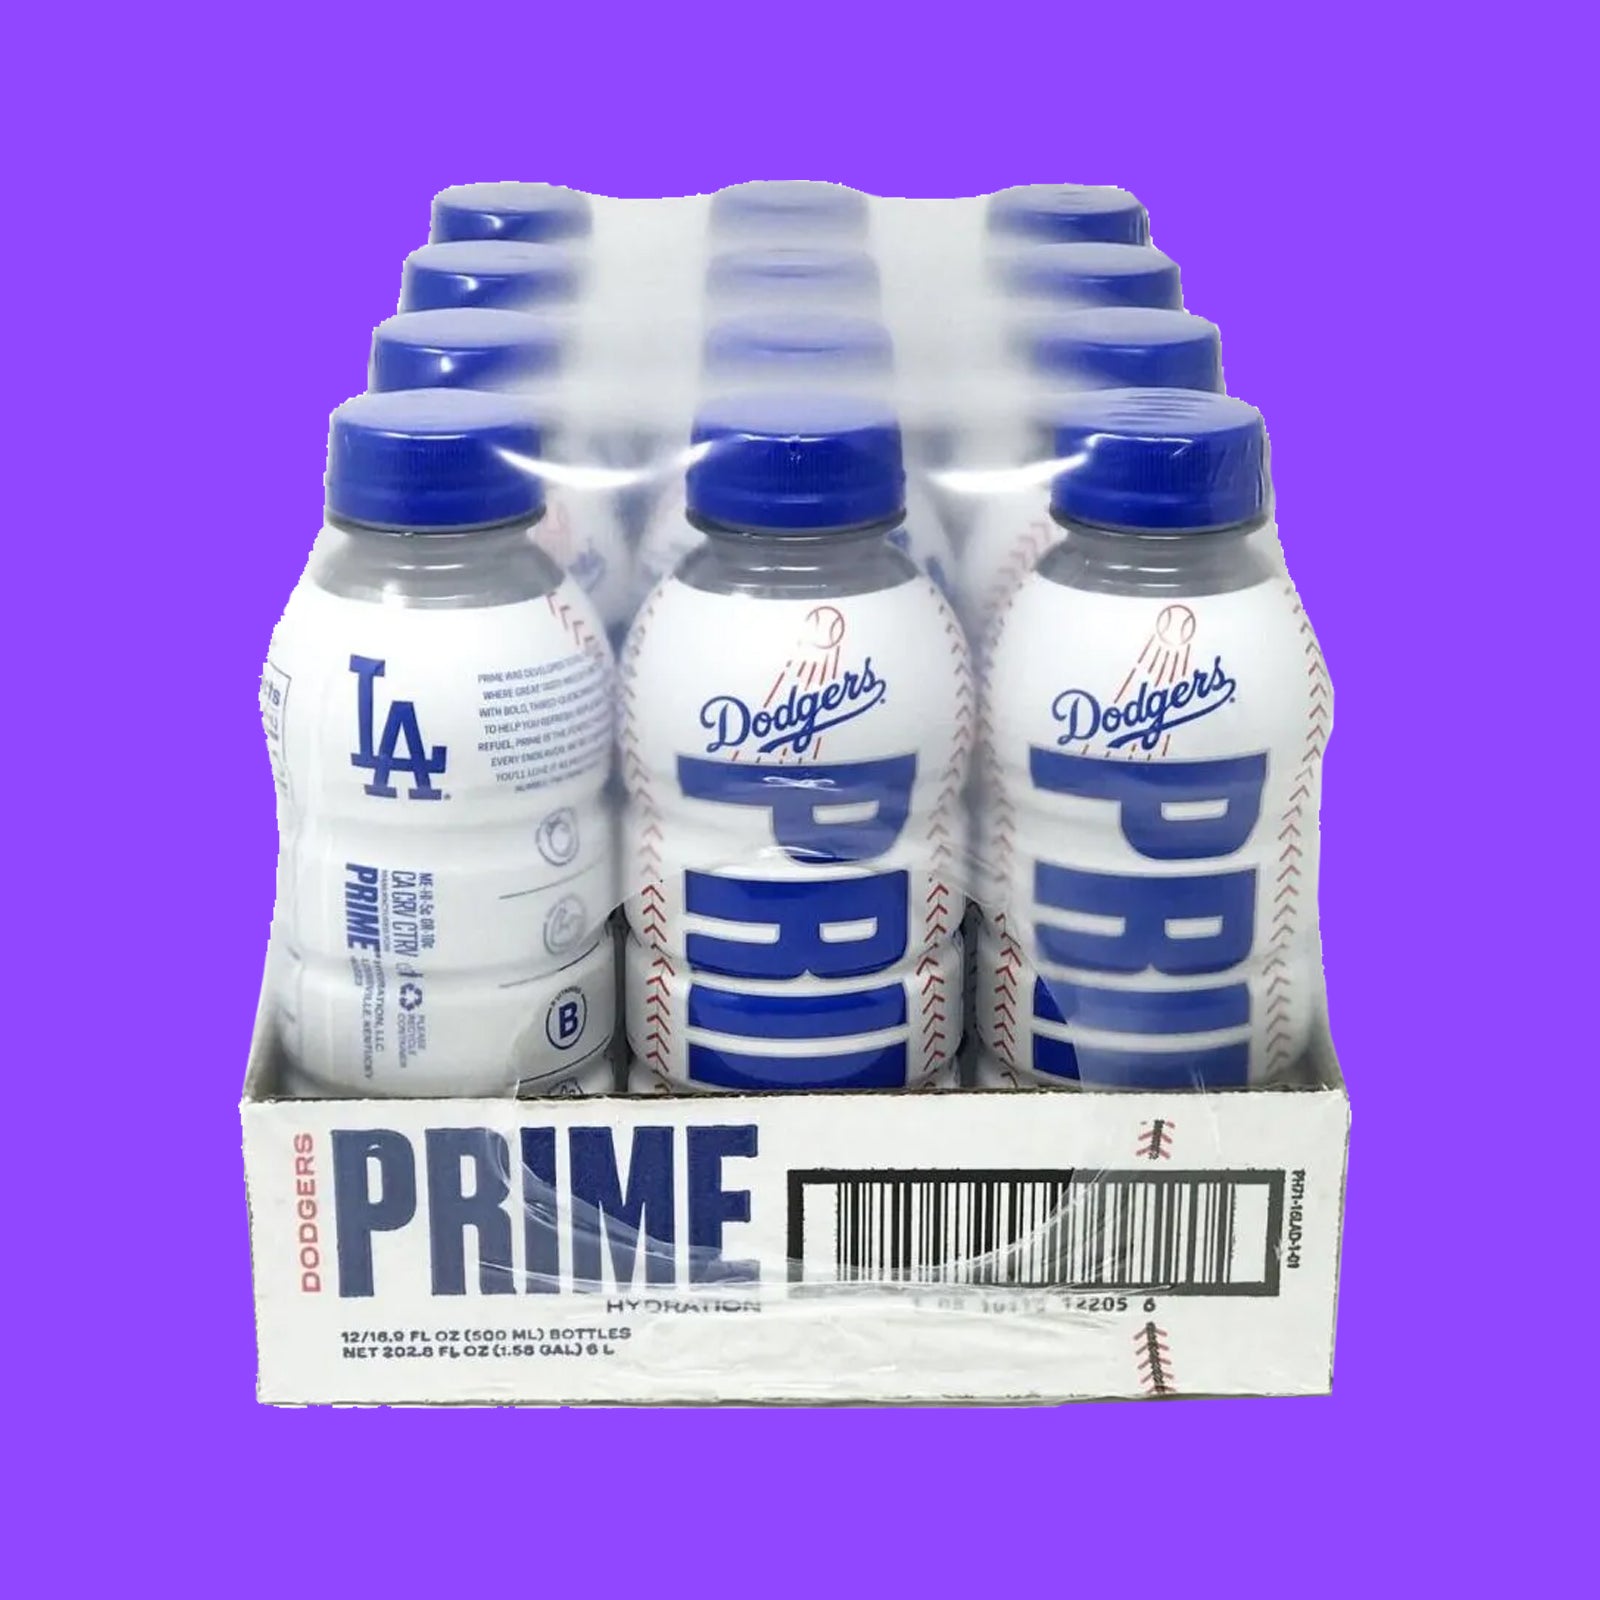 Prime LA Dodgers Limited Edition